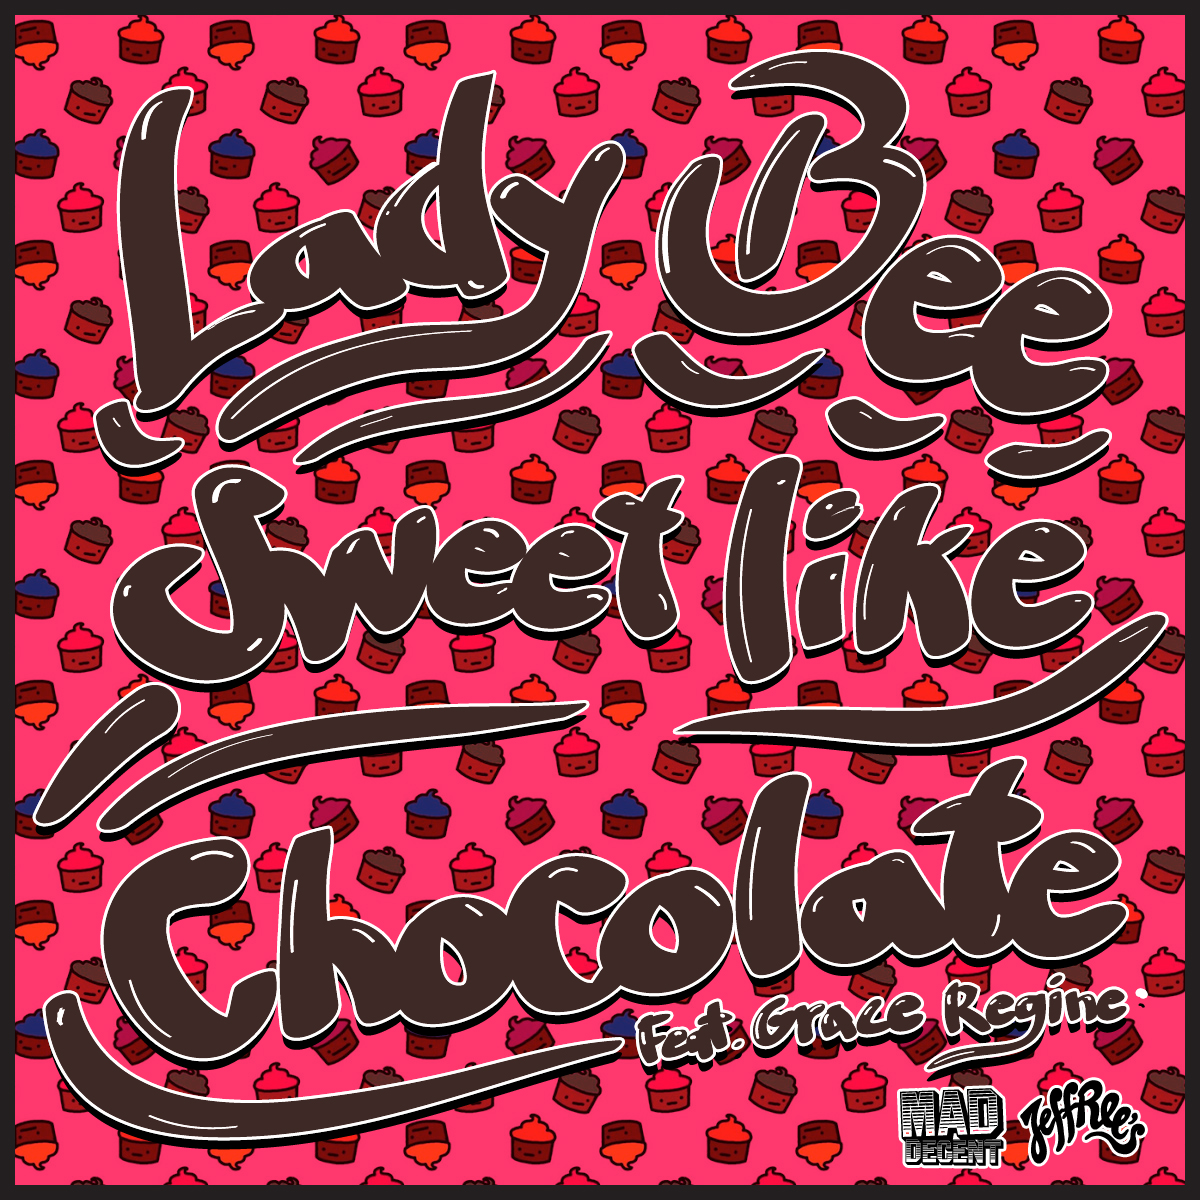 They like sweets. Sweet Bee песня. Lady Bee Memphis. Chocolate mp3. Sweet Bee.